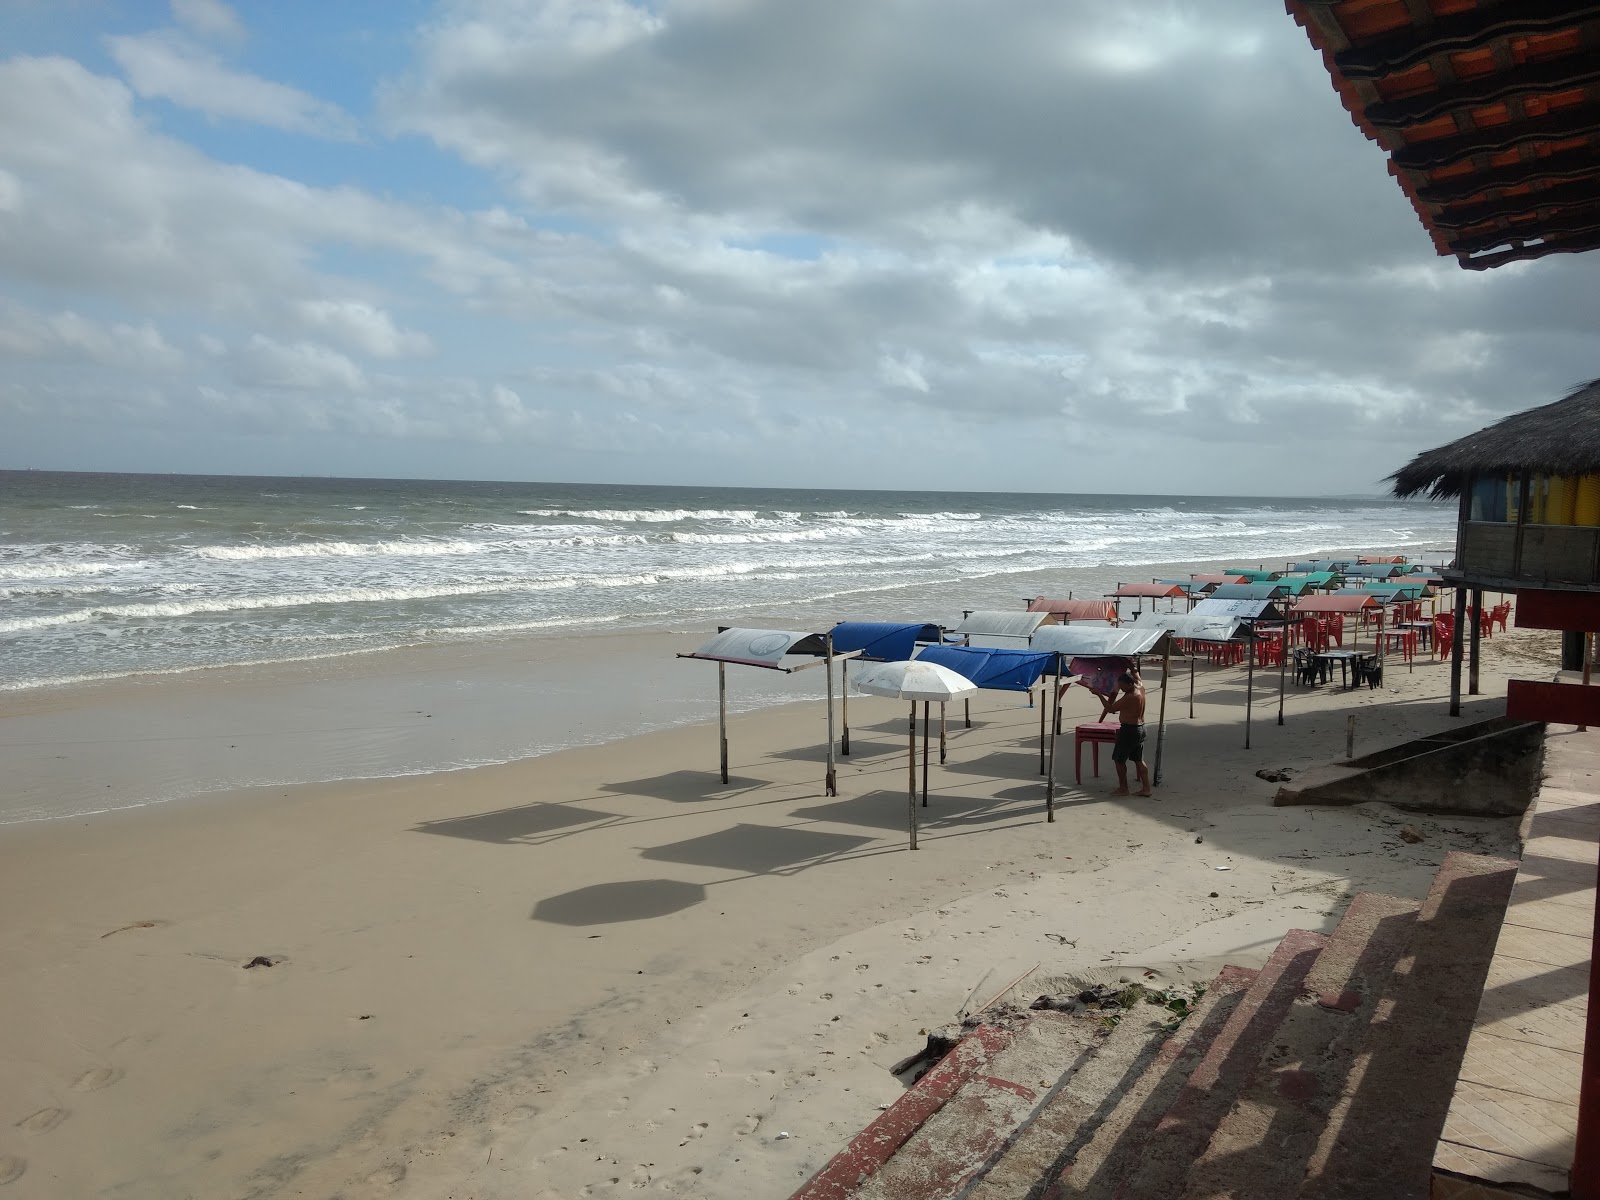 Praia Litoranea'in fotoğrafı - rahatlamayı sevenler arasında popüler bir yer